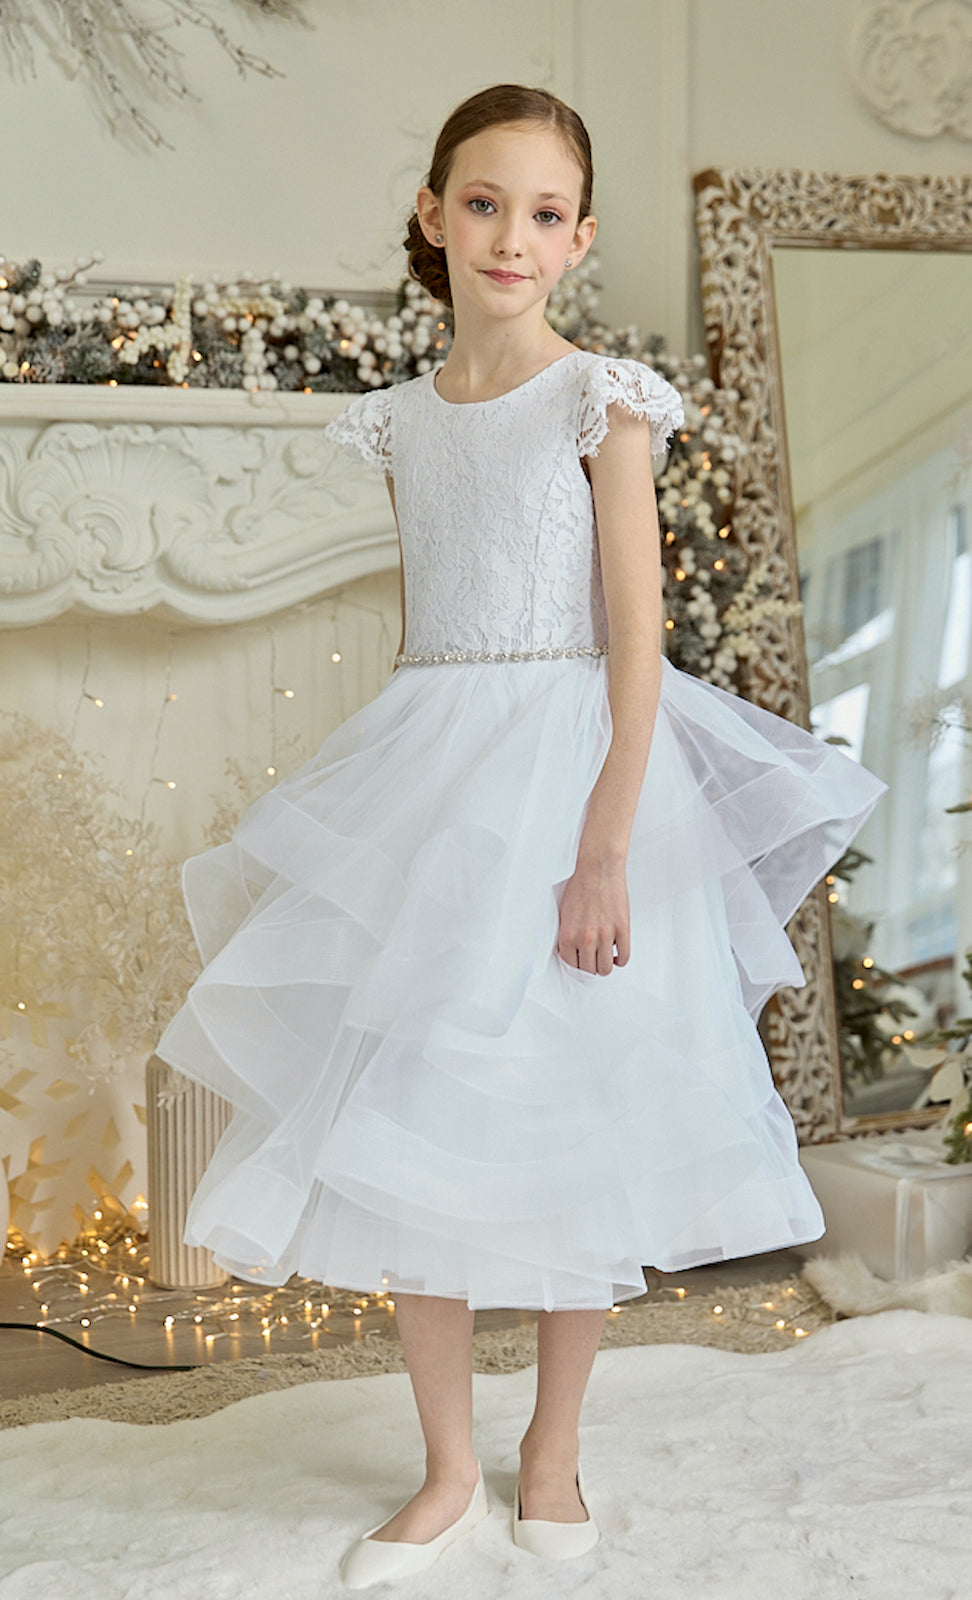 Toddler First Communion Dress Girl Wedding Dress White Sleeveless Fluf –  marryshe